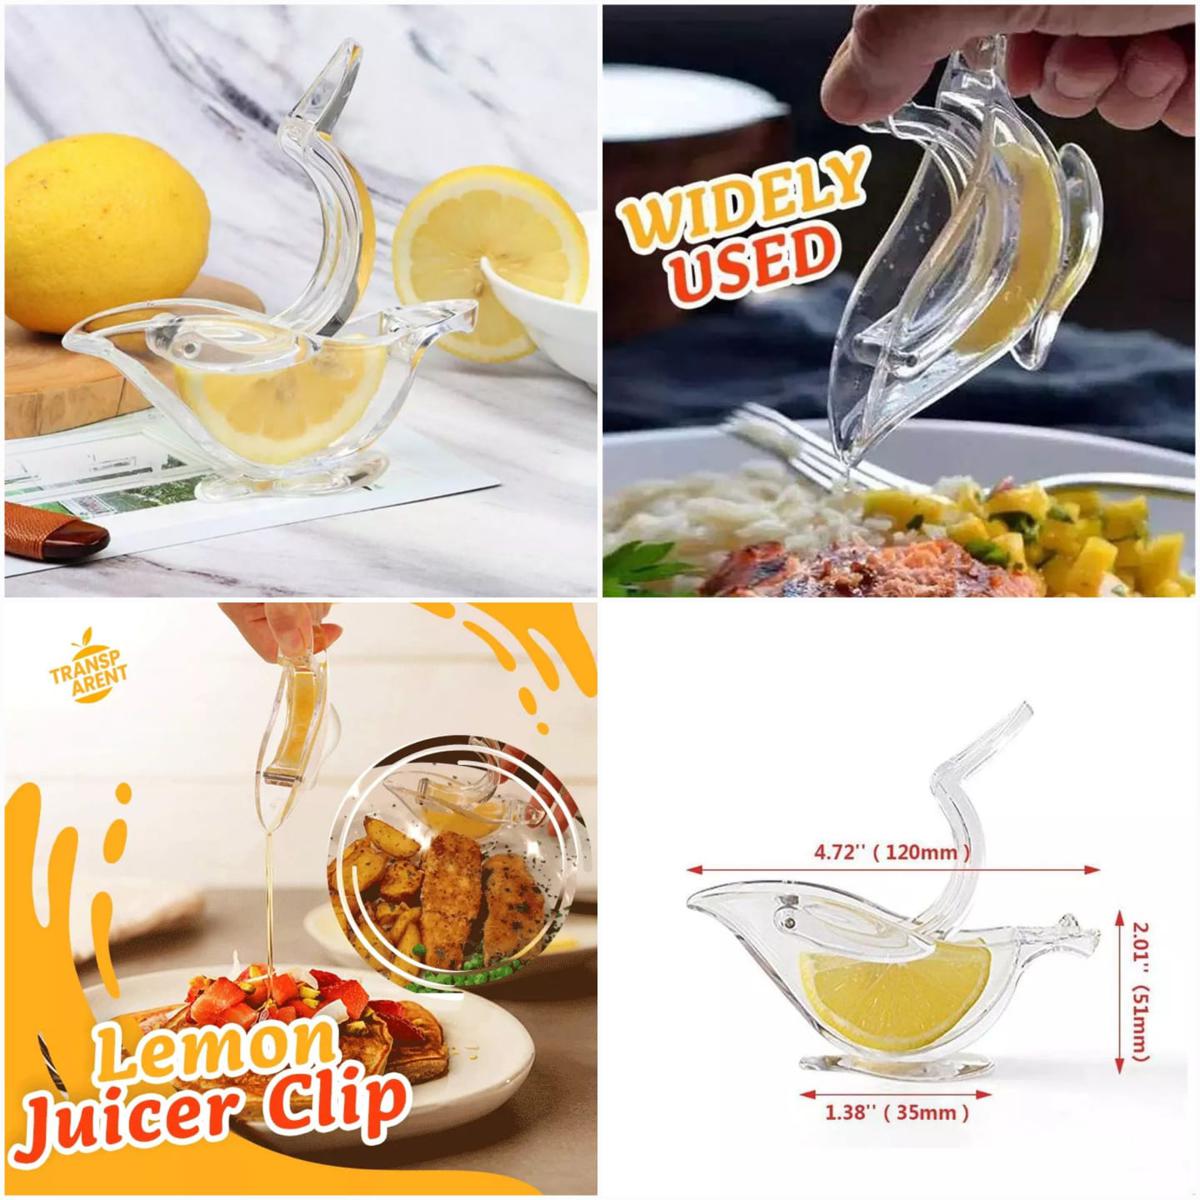 Bird Lemon Squeezer Juicer Citrus